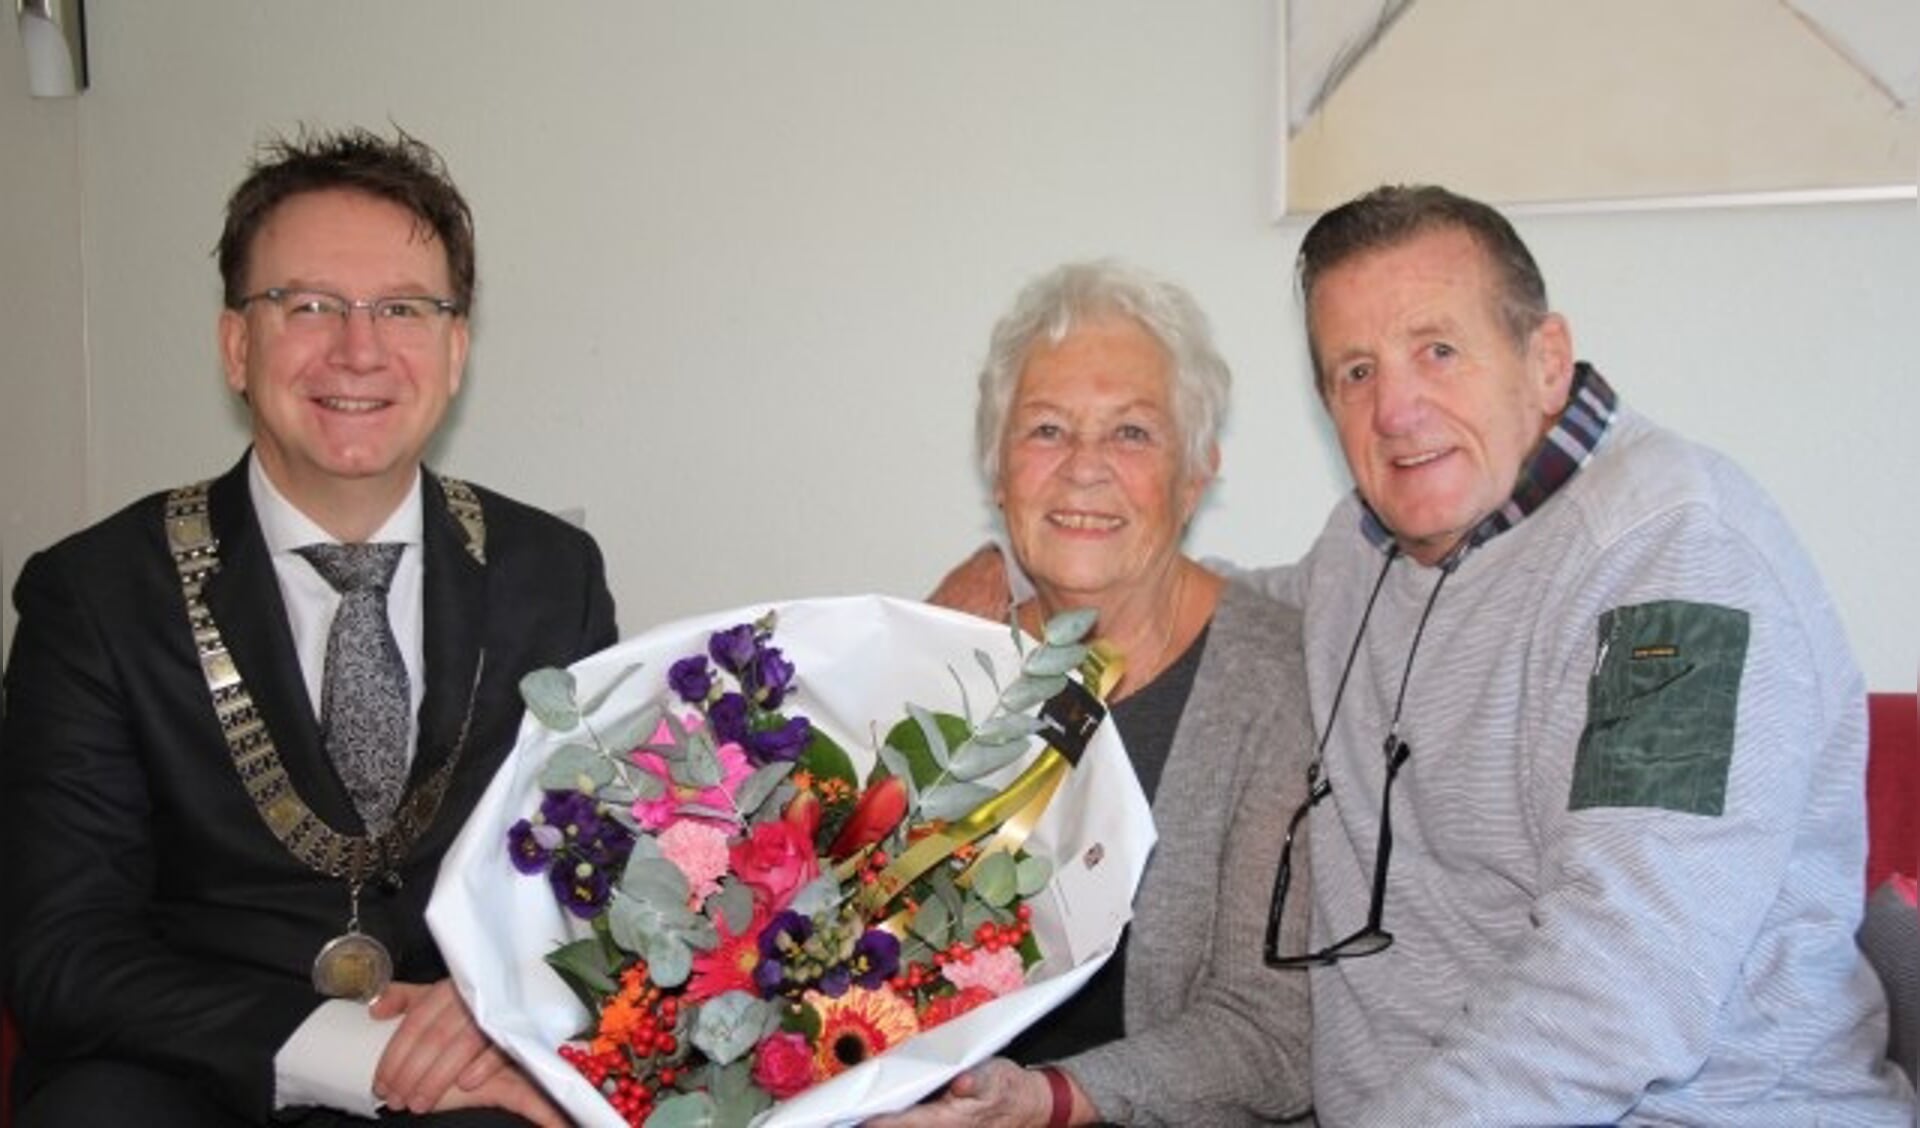 Het bezoek van burgemeester Van Domburg kwam voor het gouden paar Lenie en Chris Janssen echt als een volslagen - maar leuke - verrassing. (Foto: Lysette Verwegen)